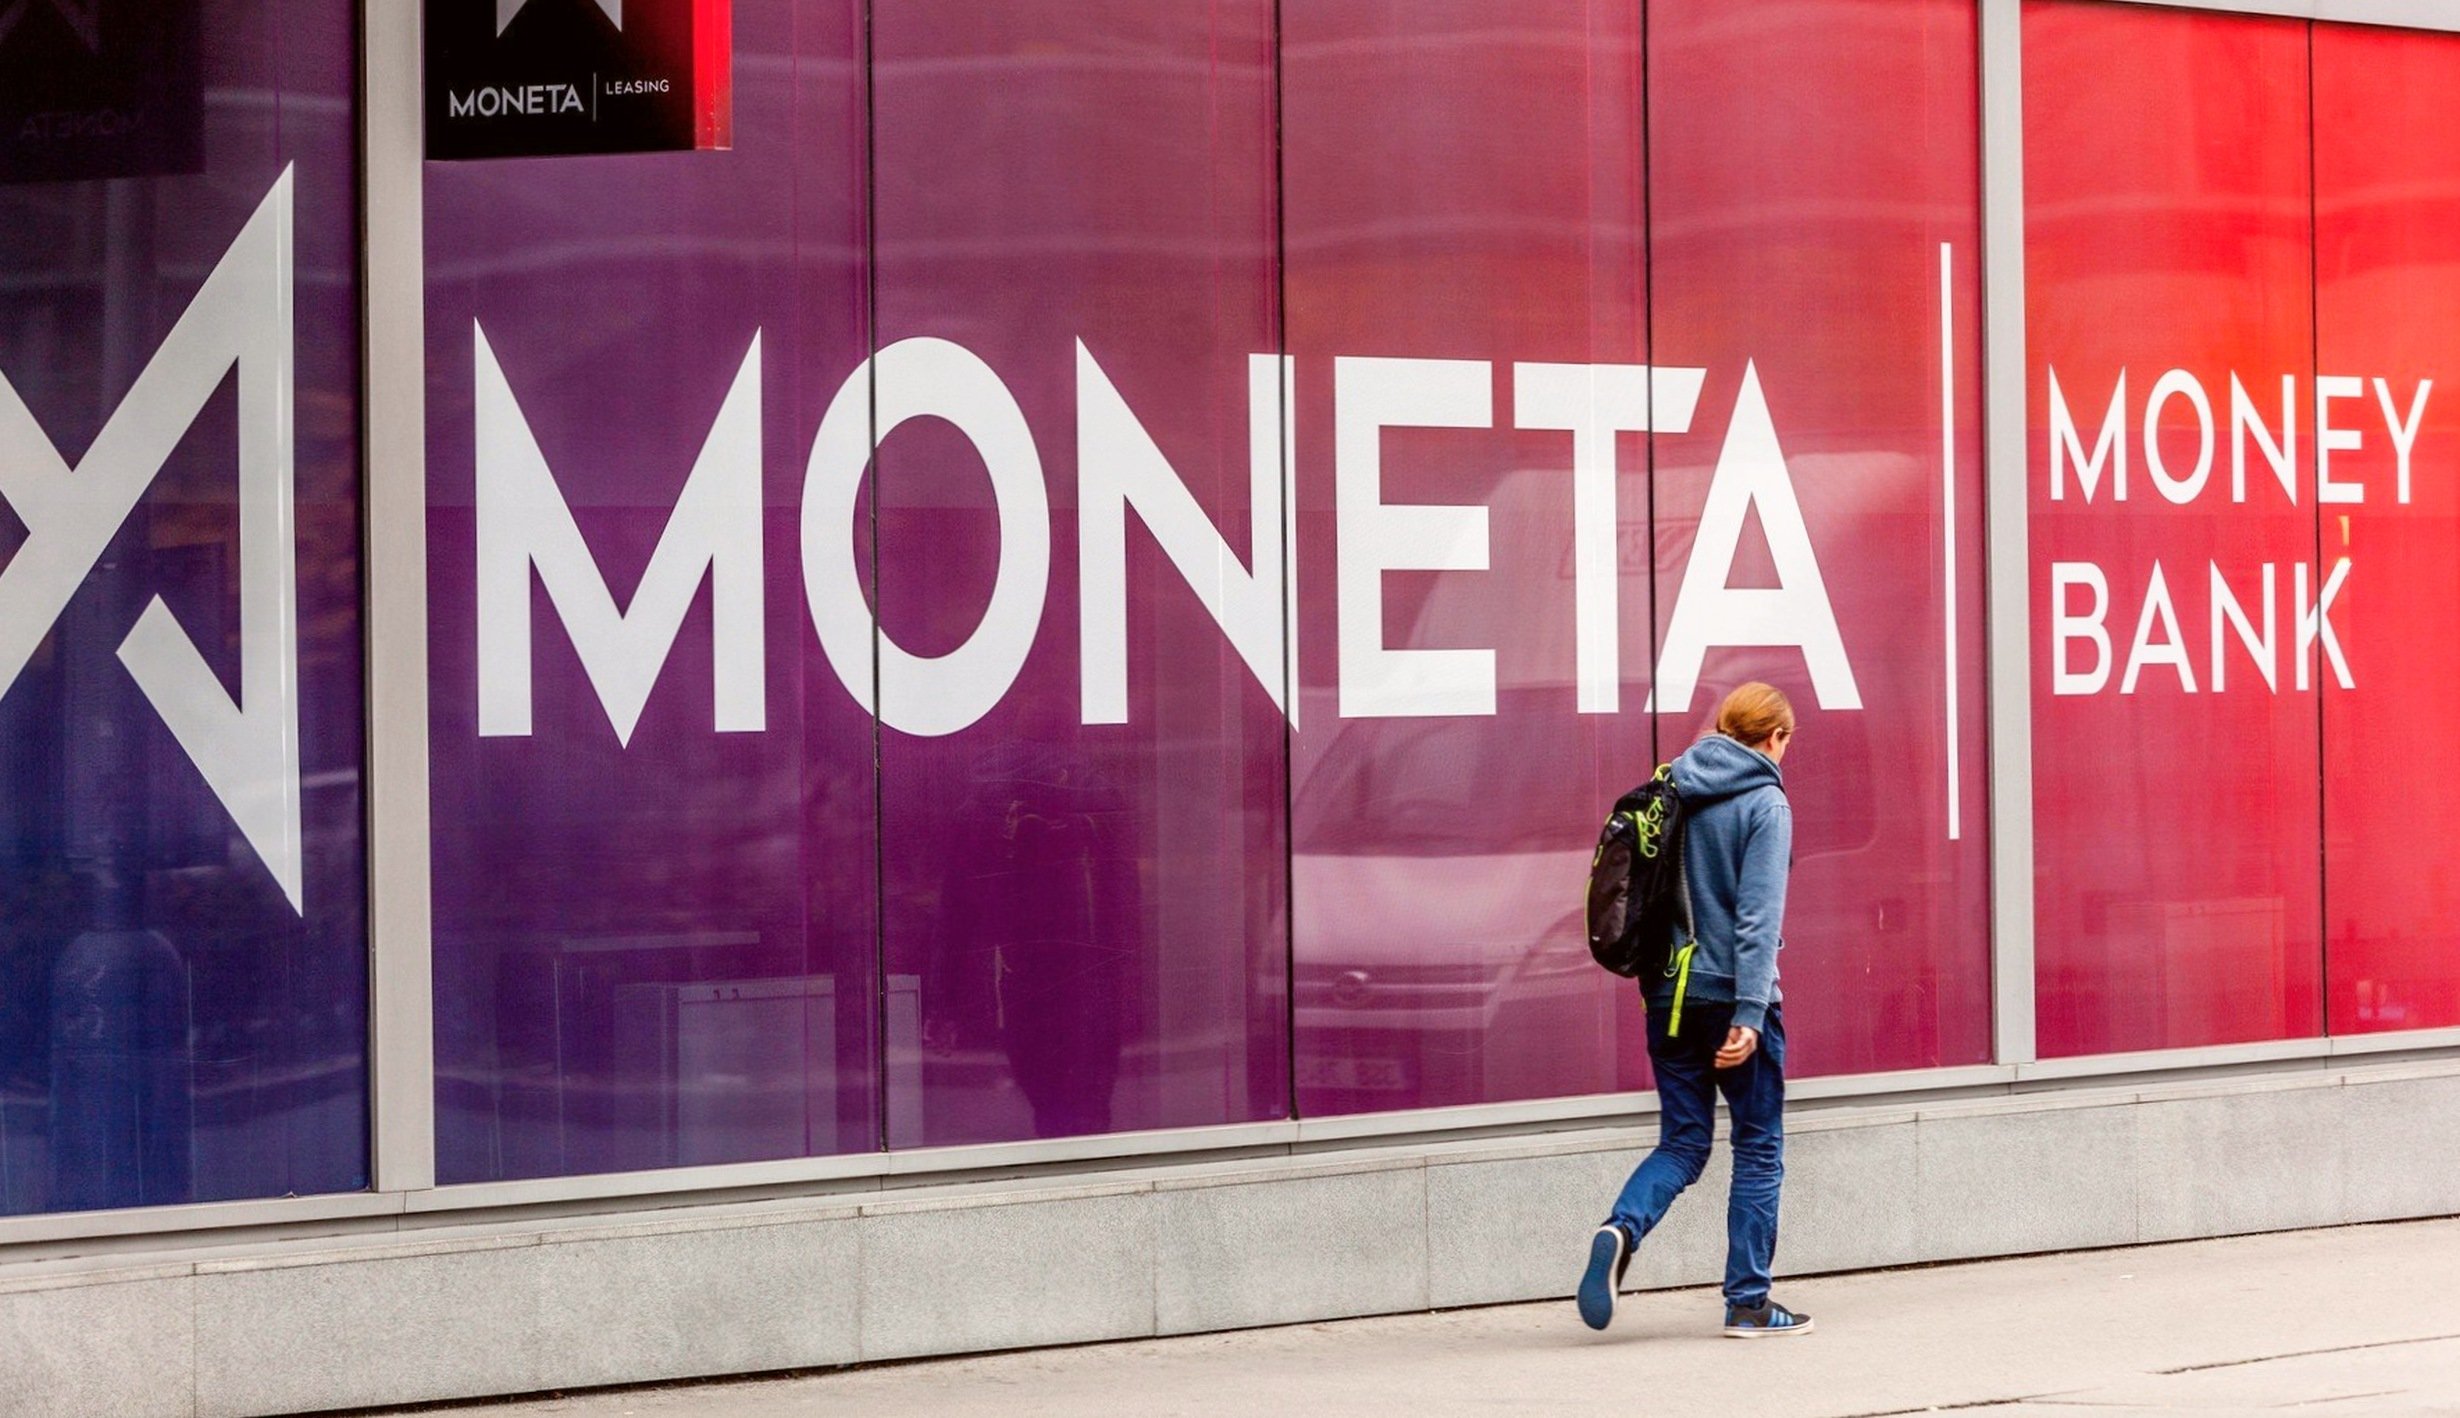 Moneta Money Bank překonala výhledy. Čistý zisk loni zvýšila o třetinu na 5,19 miliardy